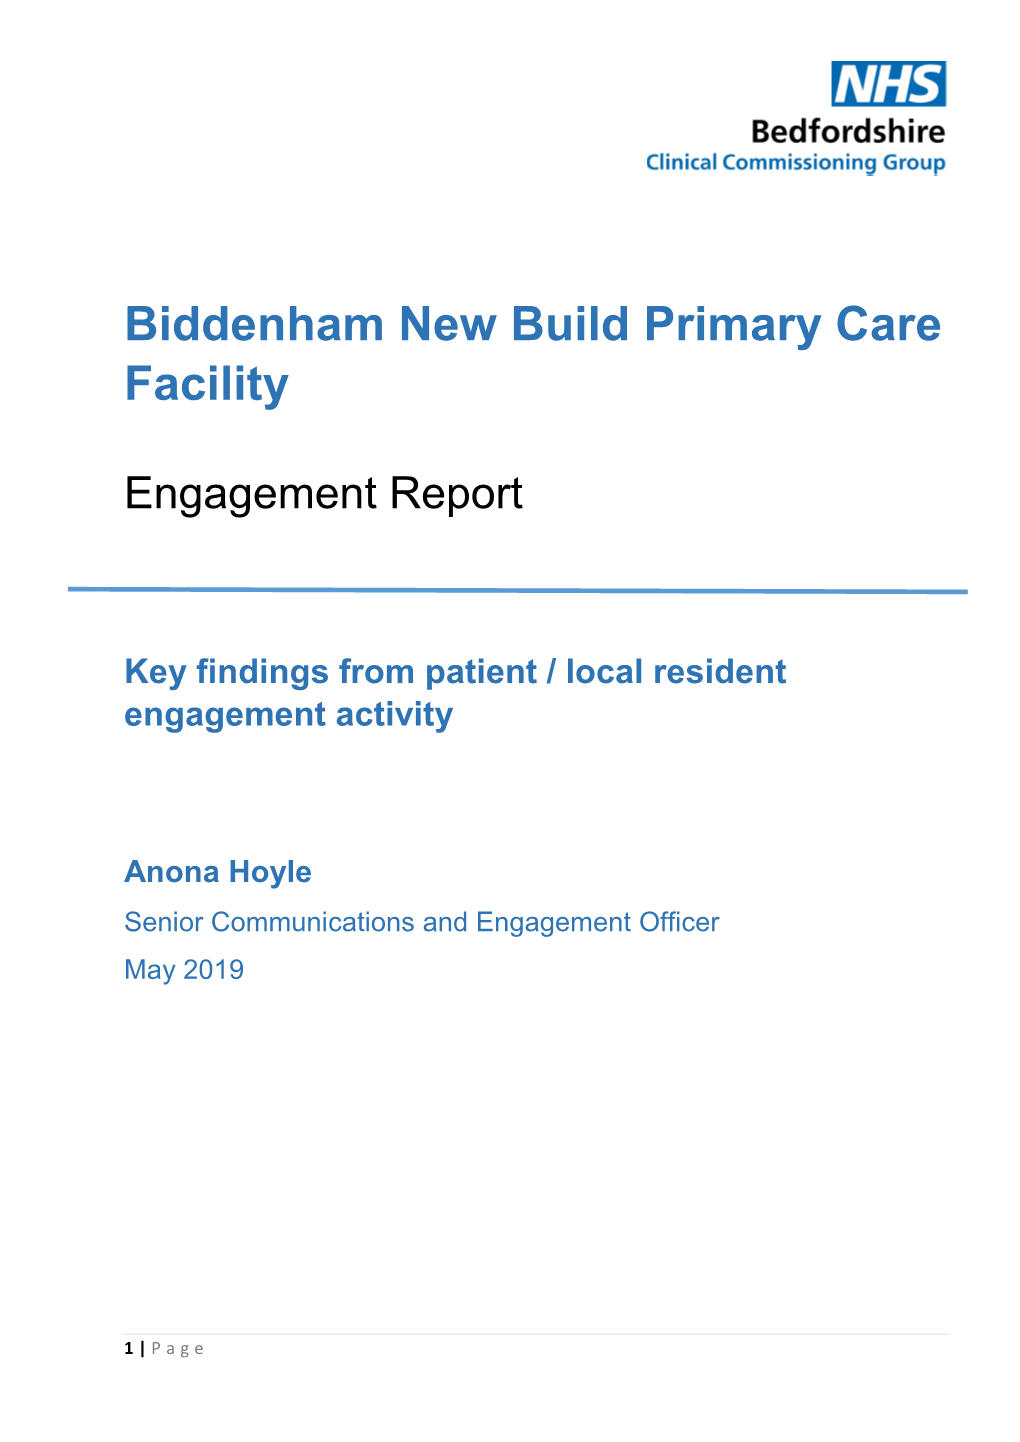 11.1 Biddenham New Build Primary Care Facility